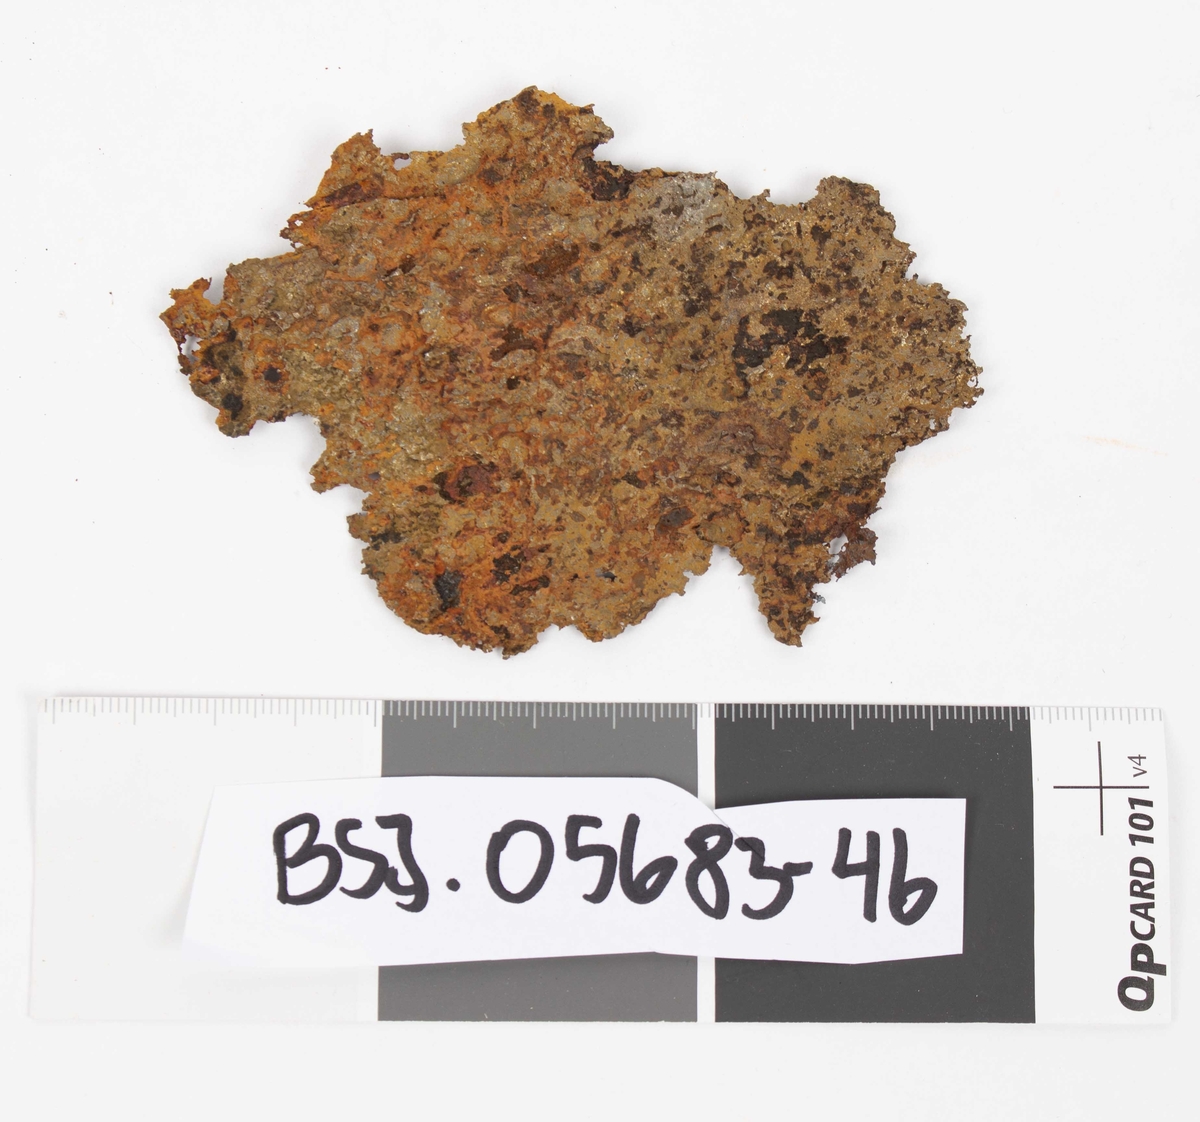 Jernflak, fragment fra uviss jerngjenstand funnet ved dykking i Kjelstraumen i Austrheim kommune.